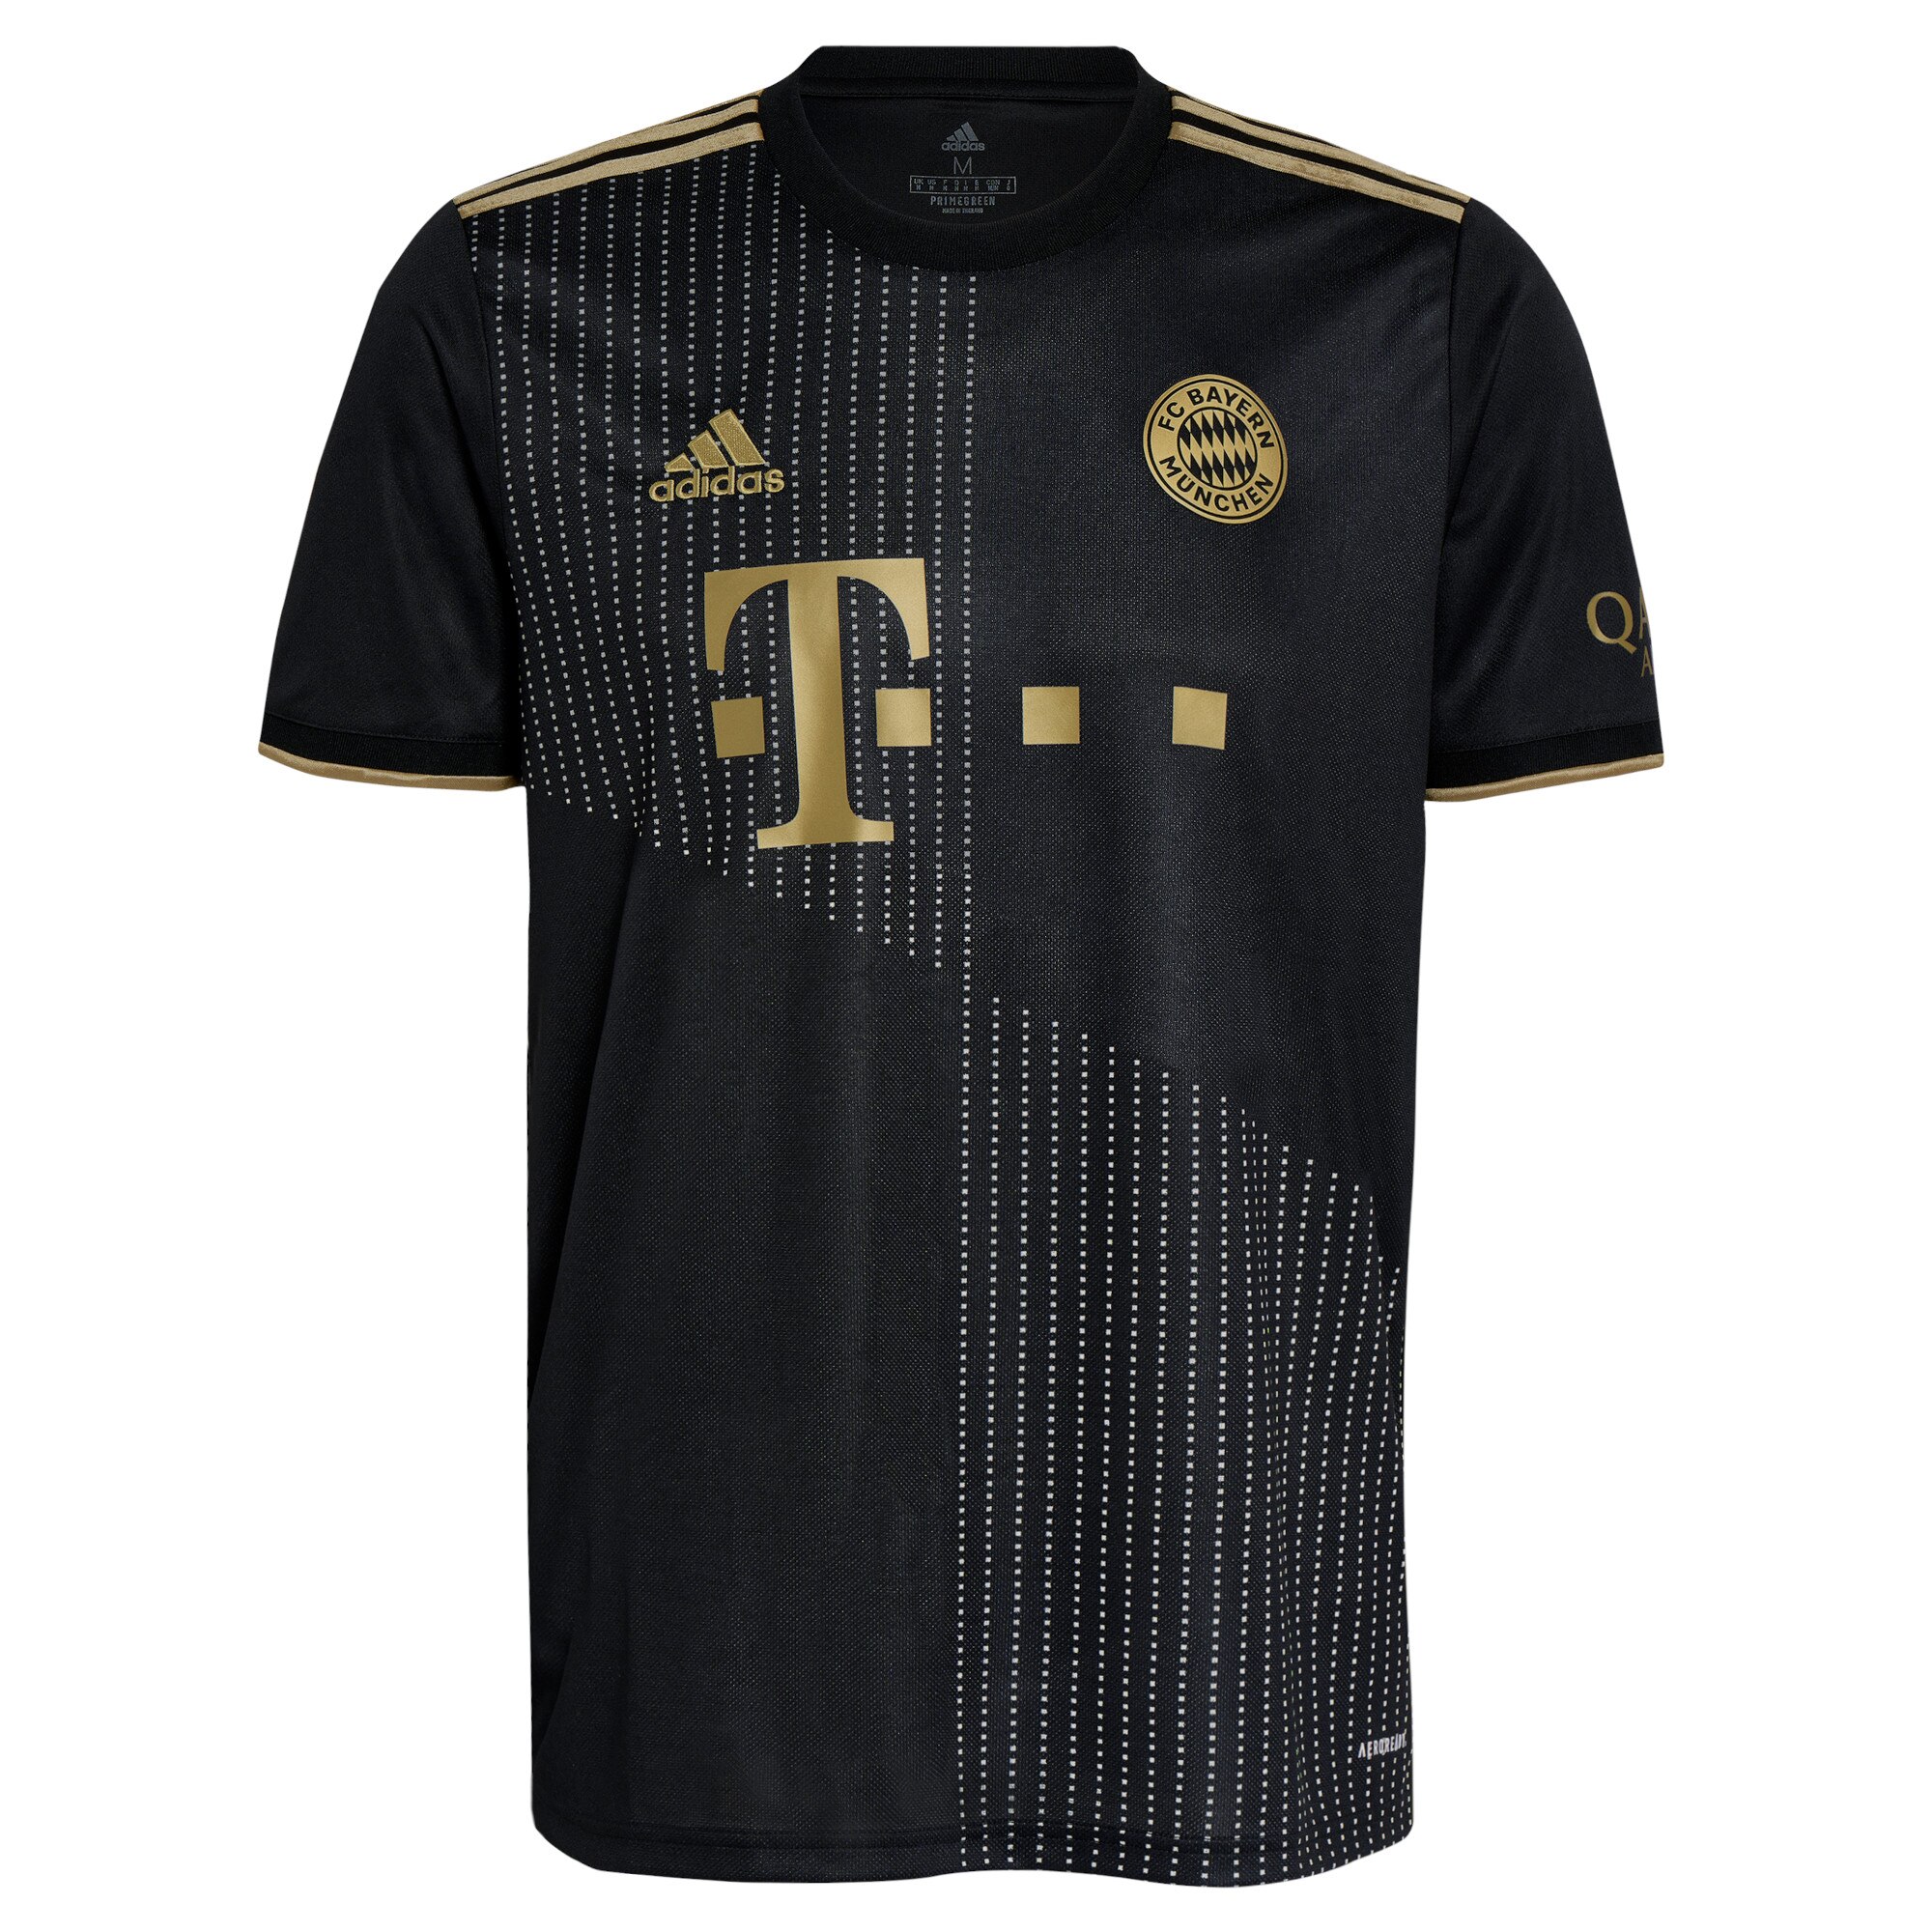 FC Bayern Away Shirt 2021-22 with O. Richards 3 printing